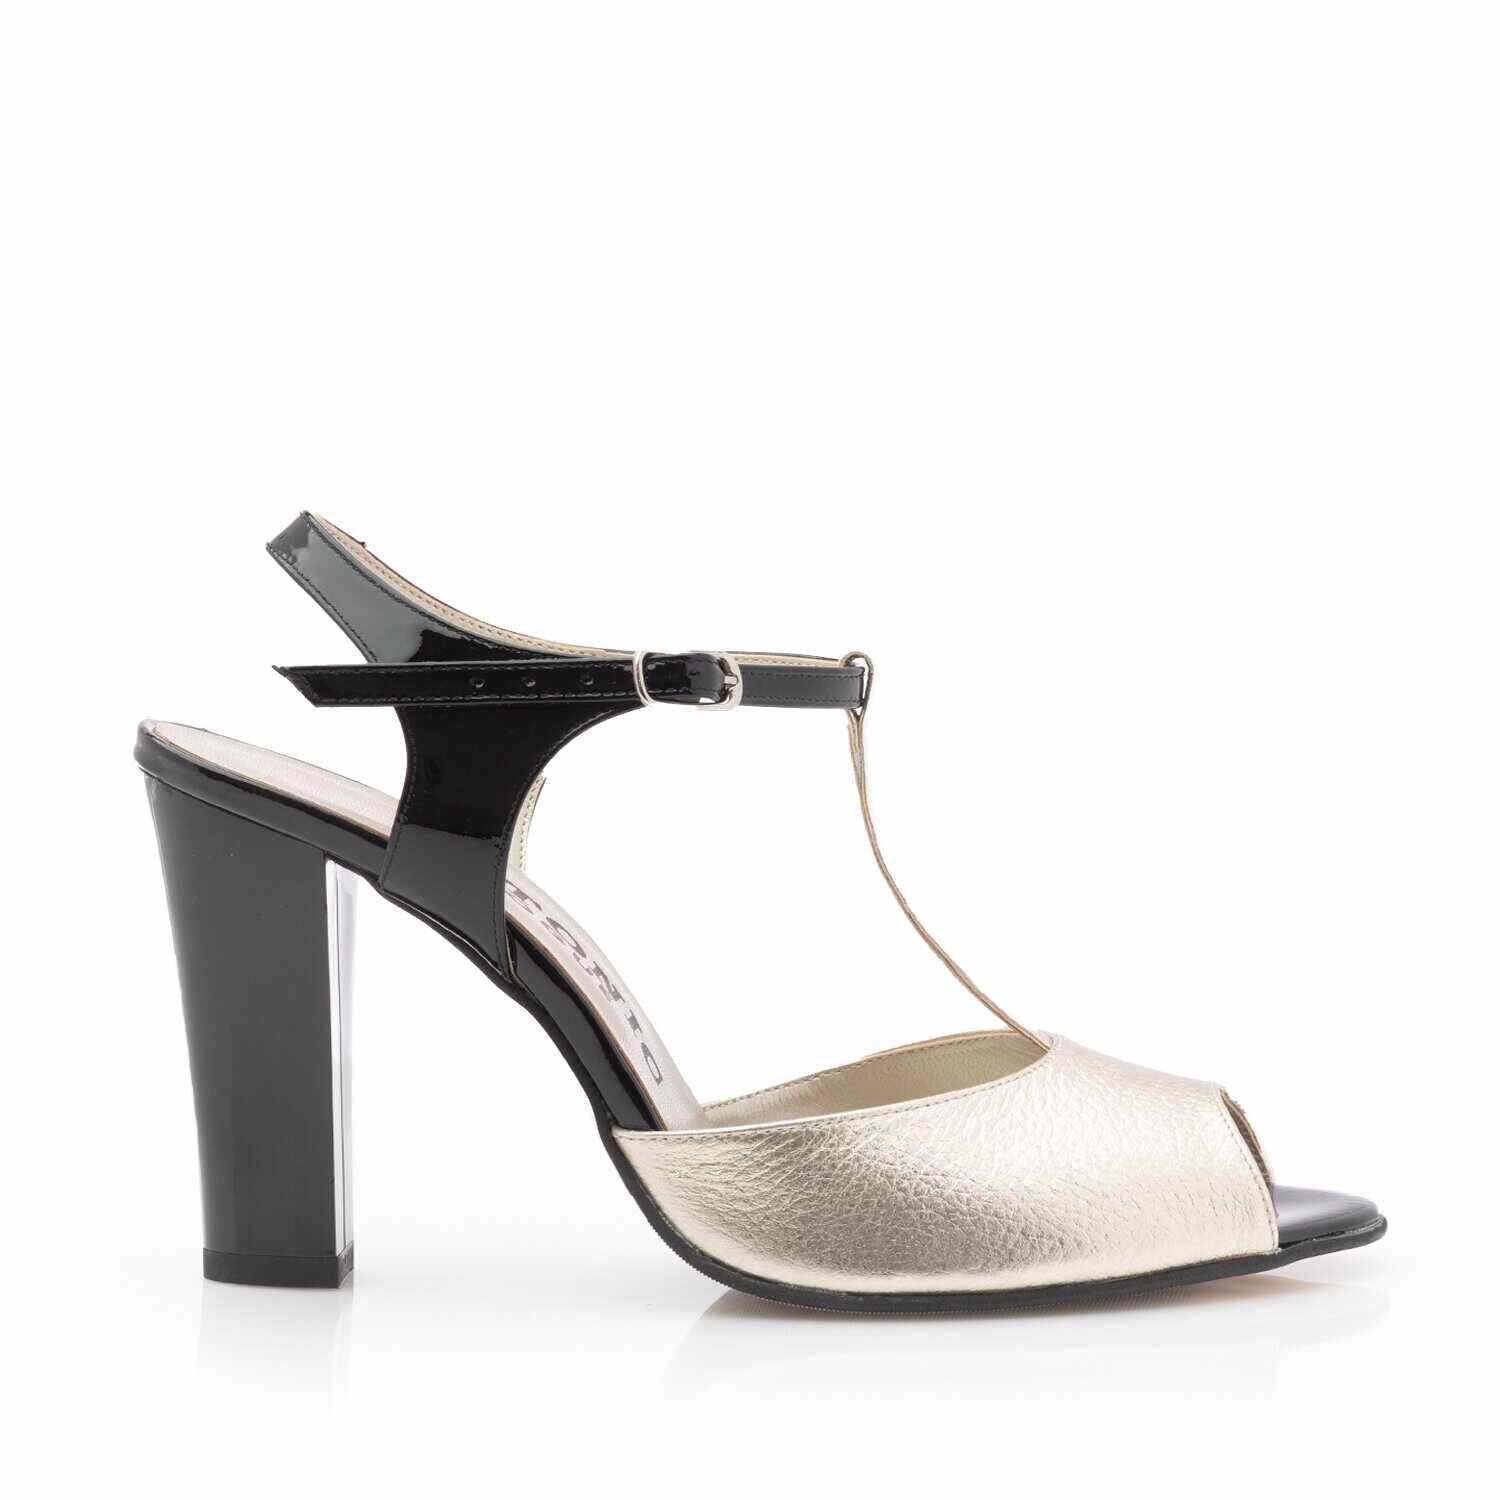 Sandale elegante damă cu toc din piele naturală - 25721 Auriu+Negru Box